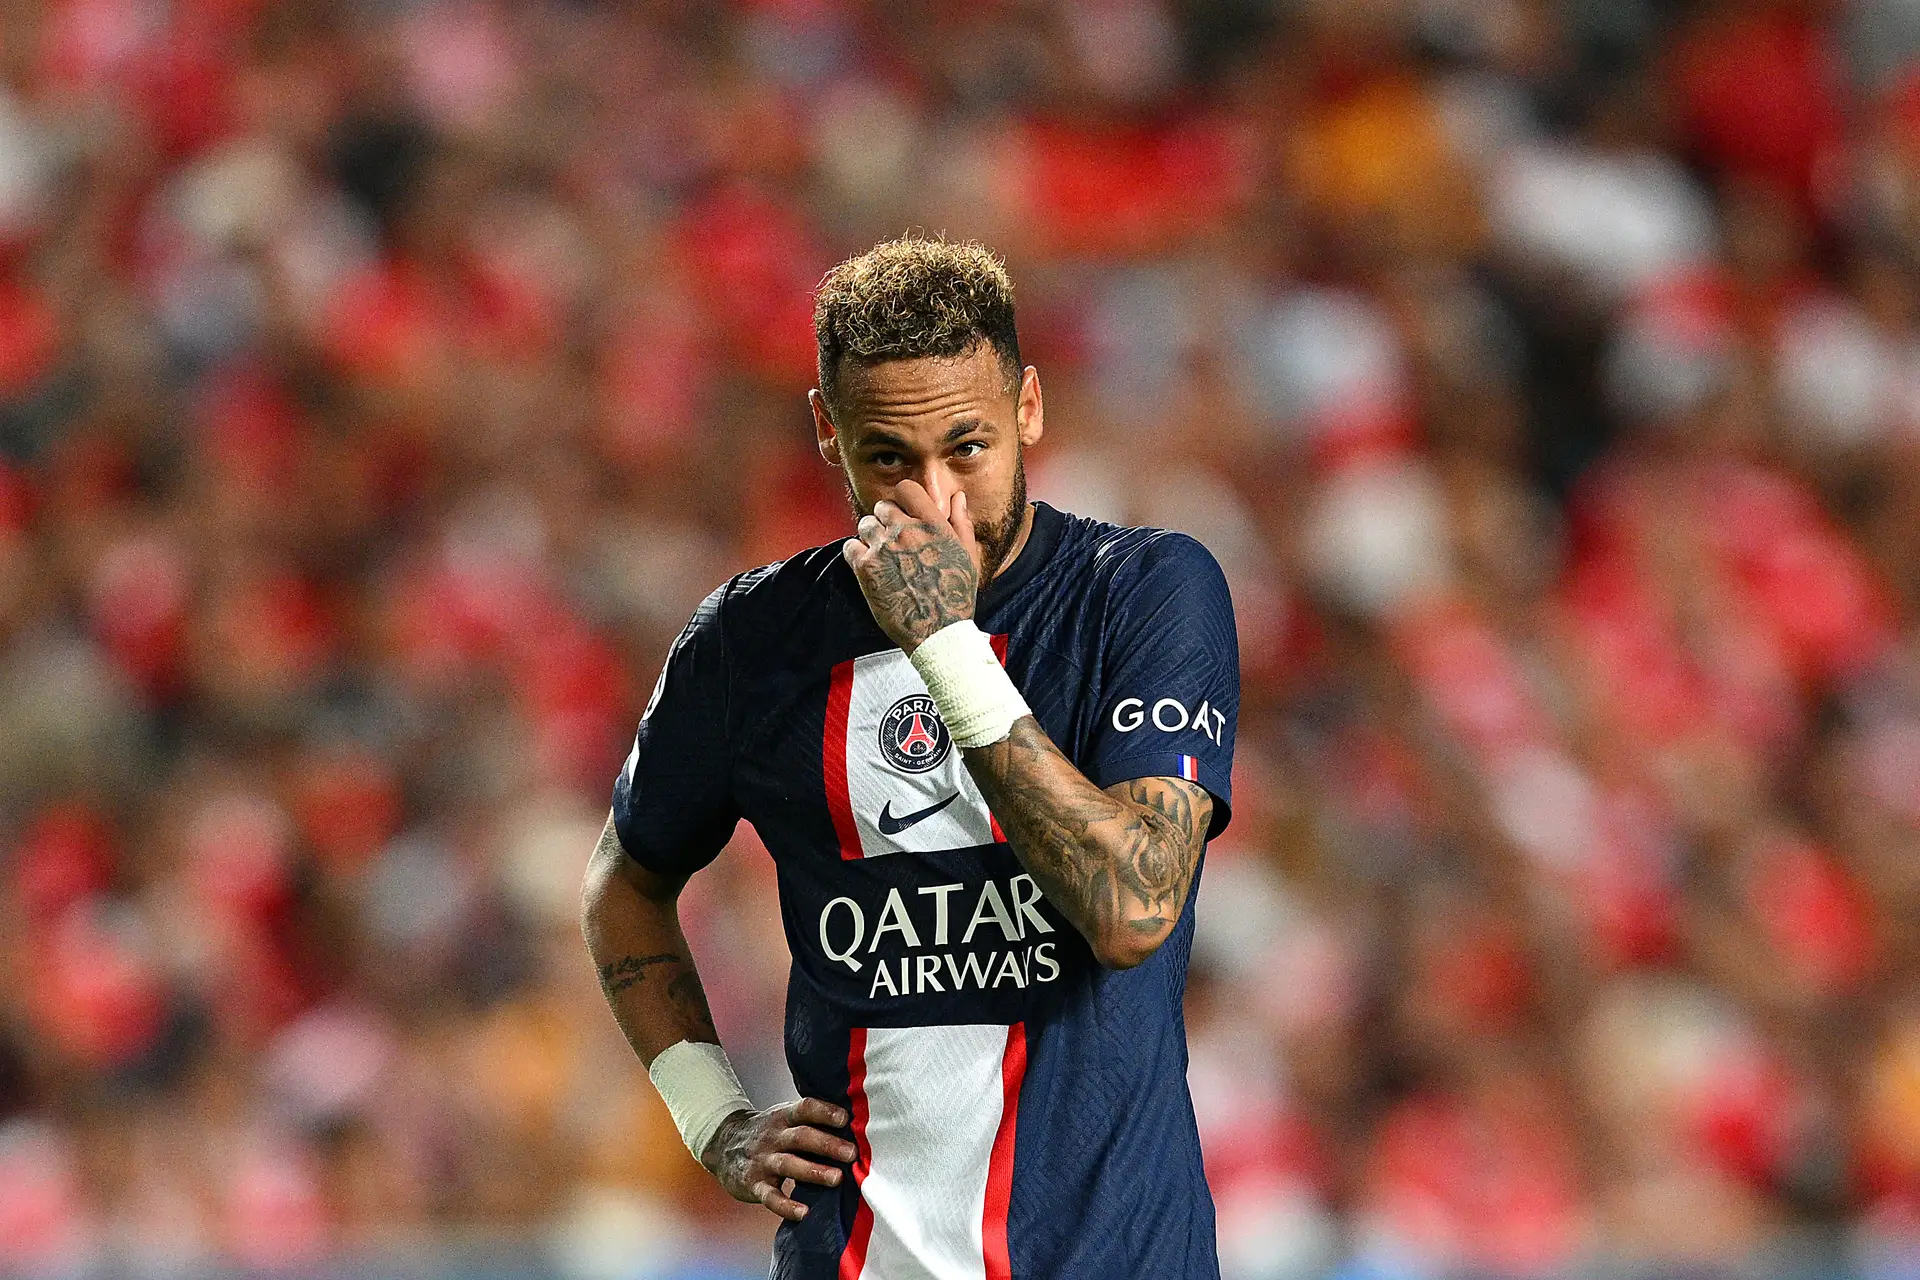 Neymar, Ronaldinho, Xavi e mais: os craques que jogaram o Mundial